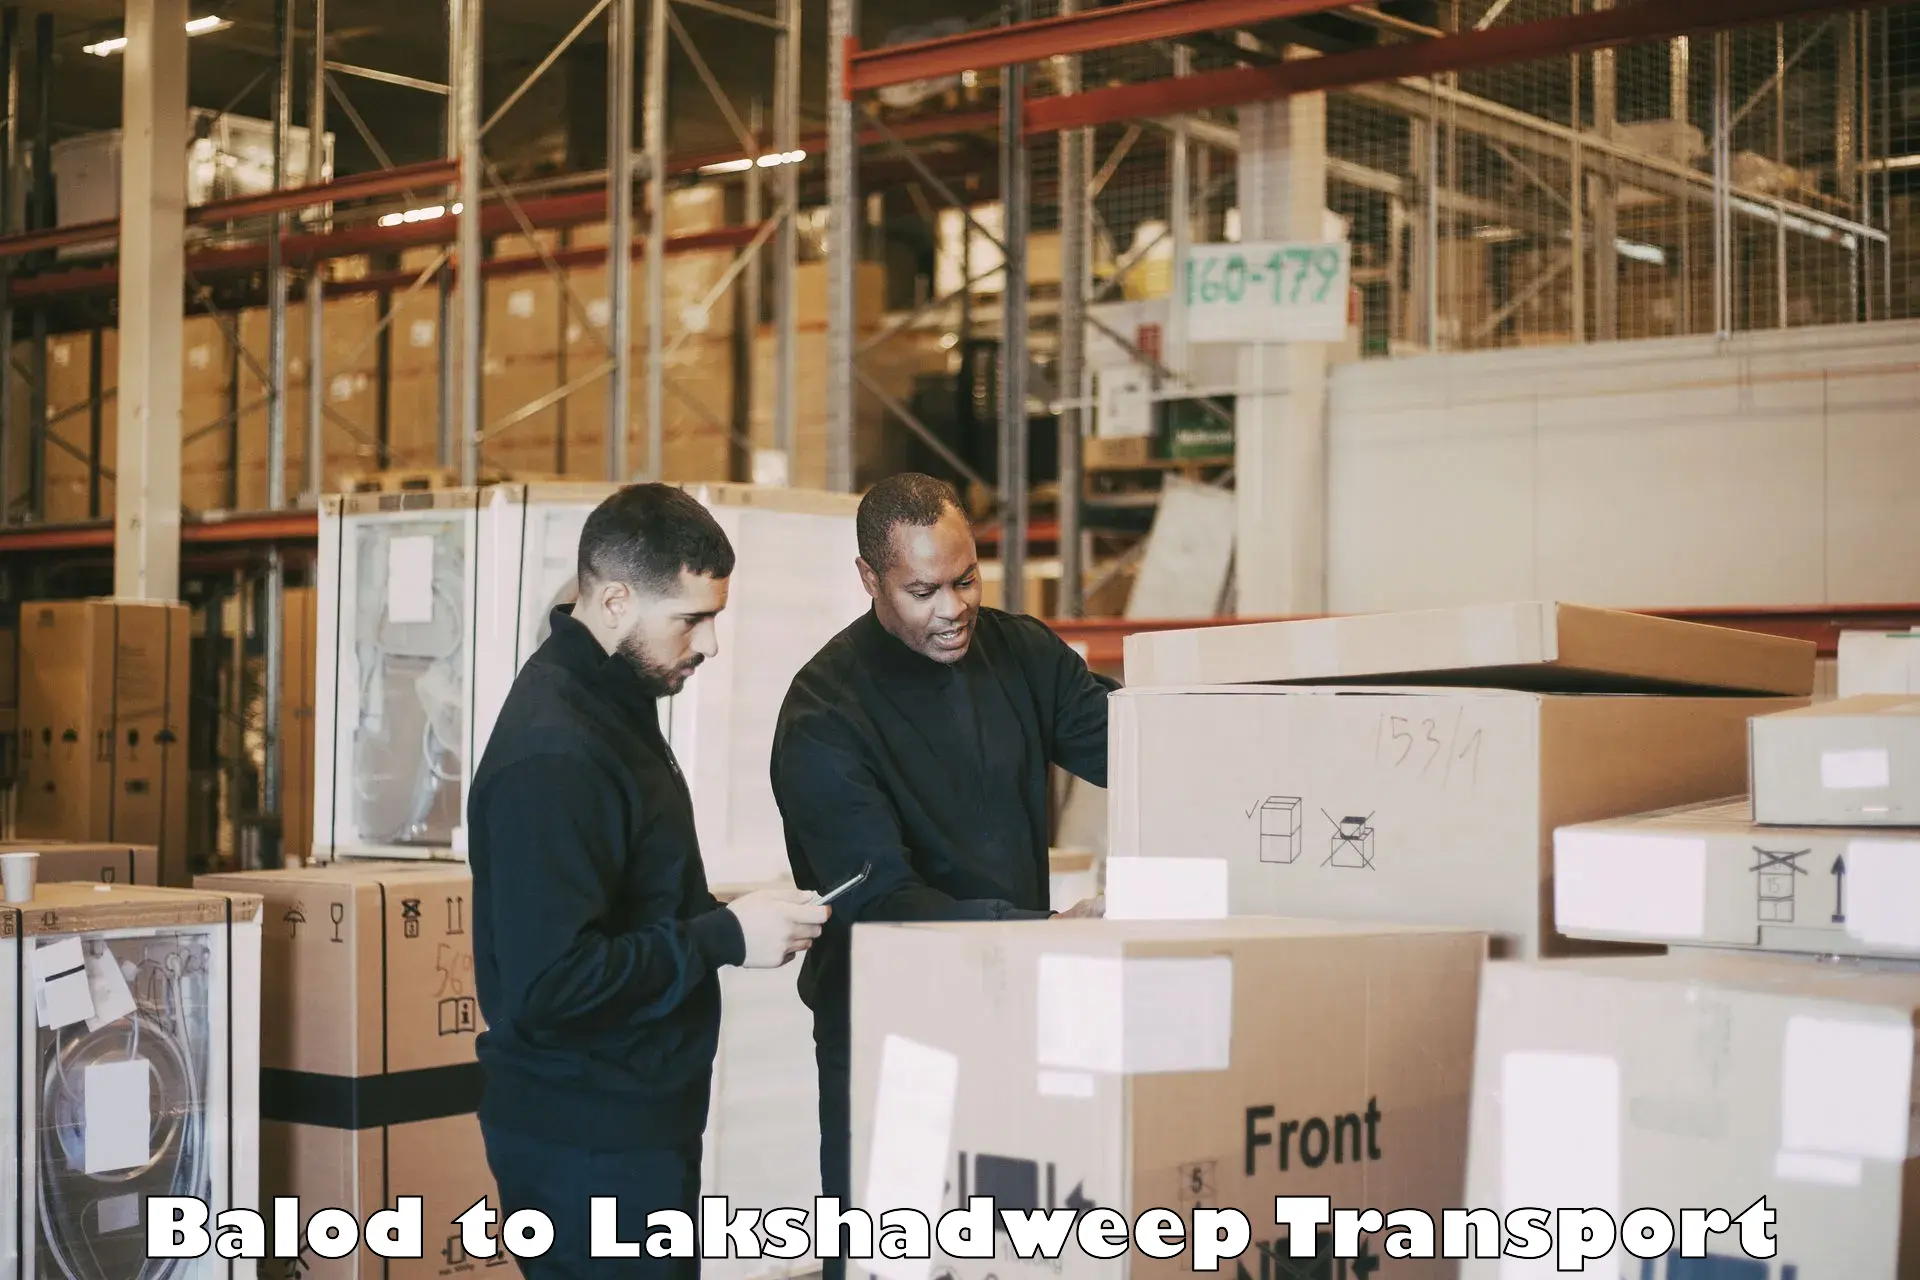 Lorry transport service Balod to Lakshadweep